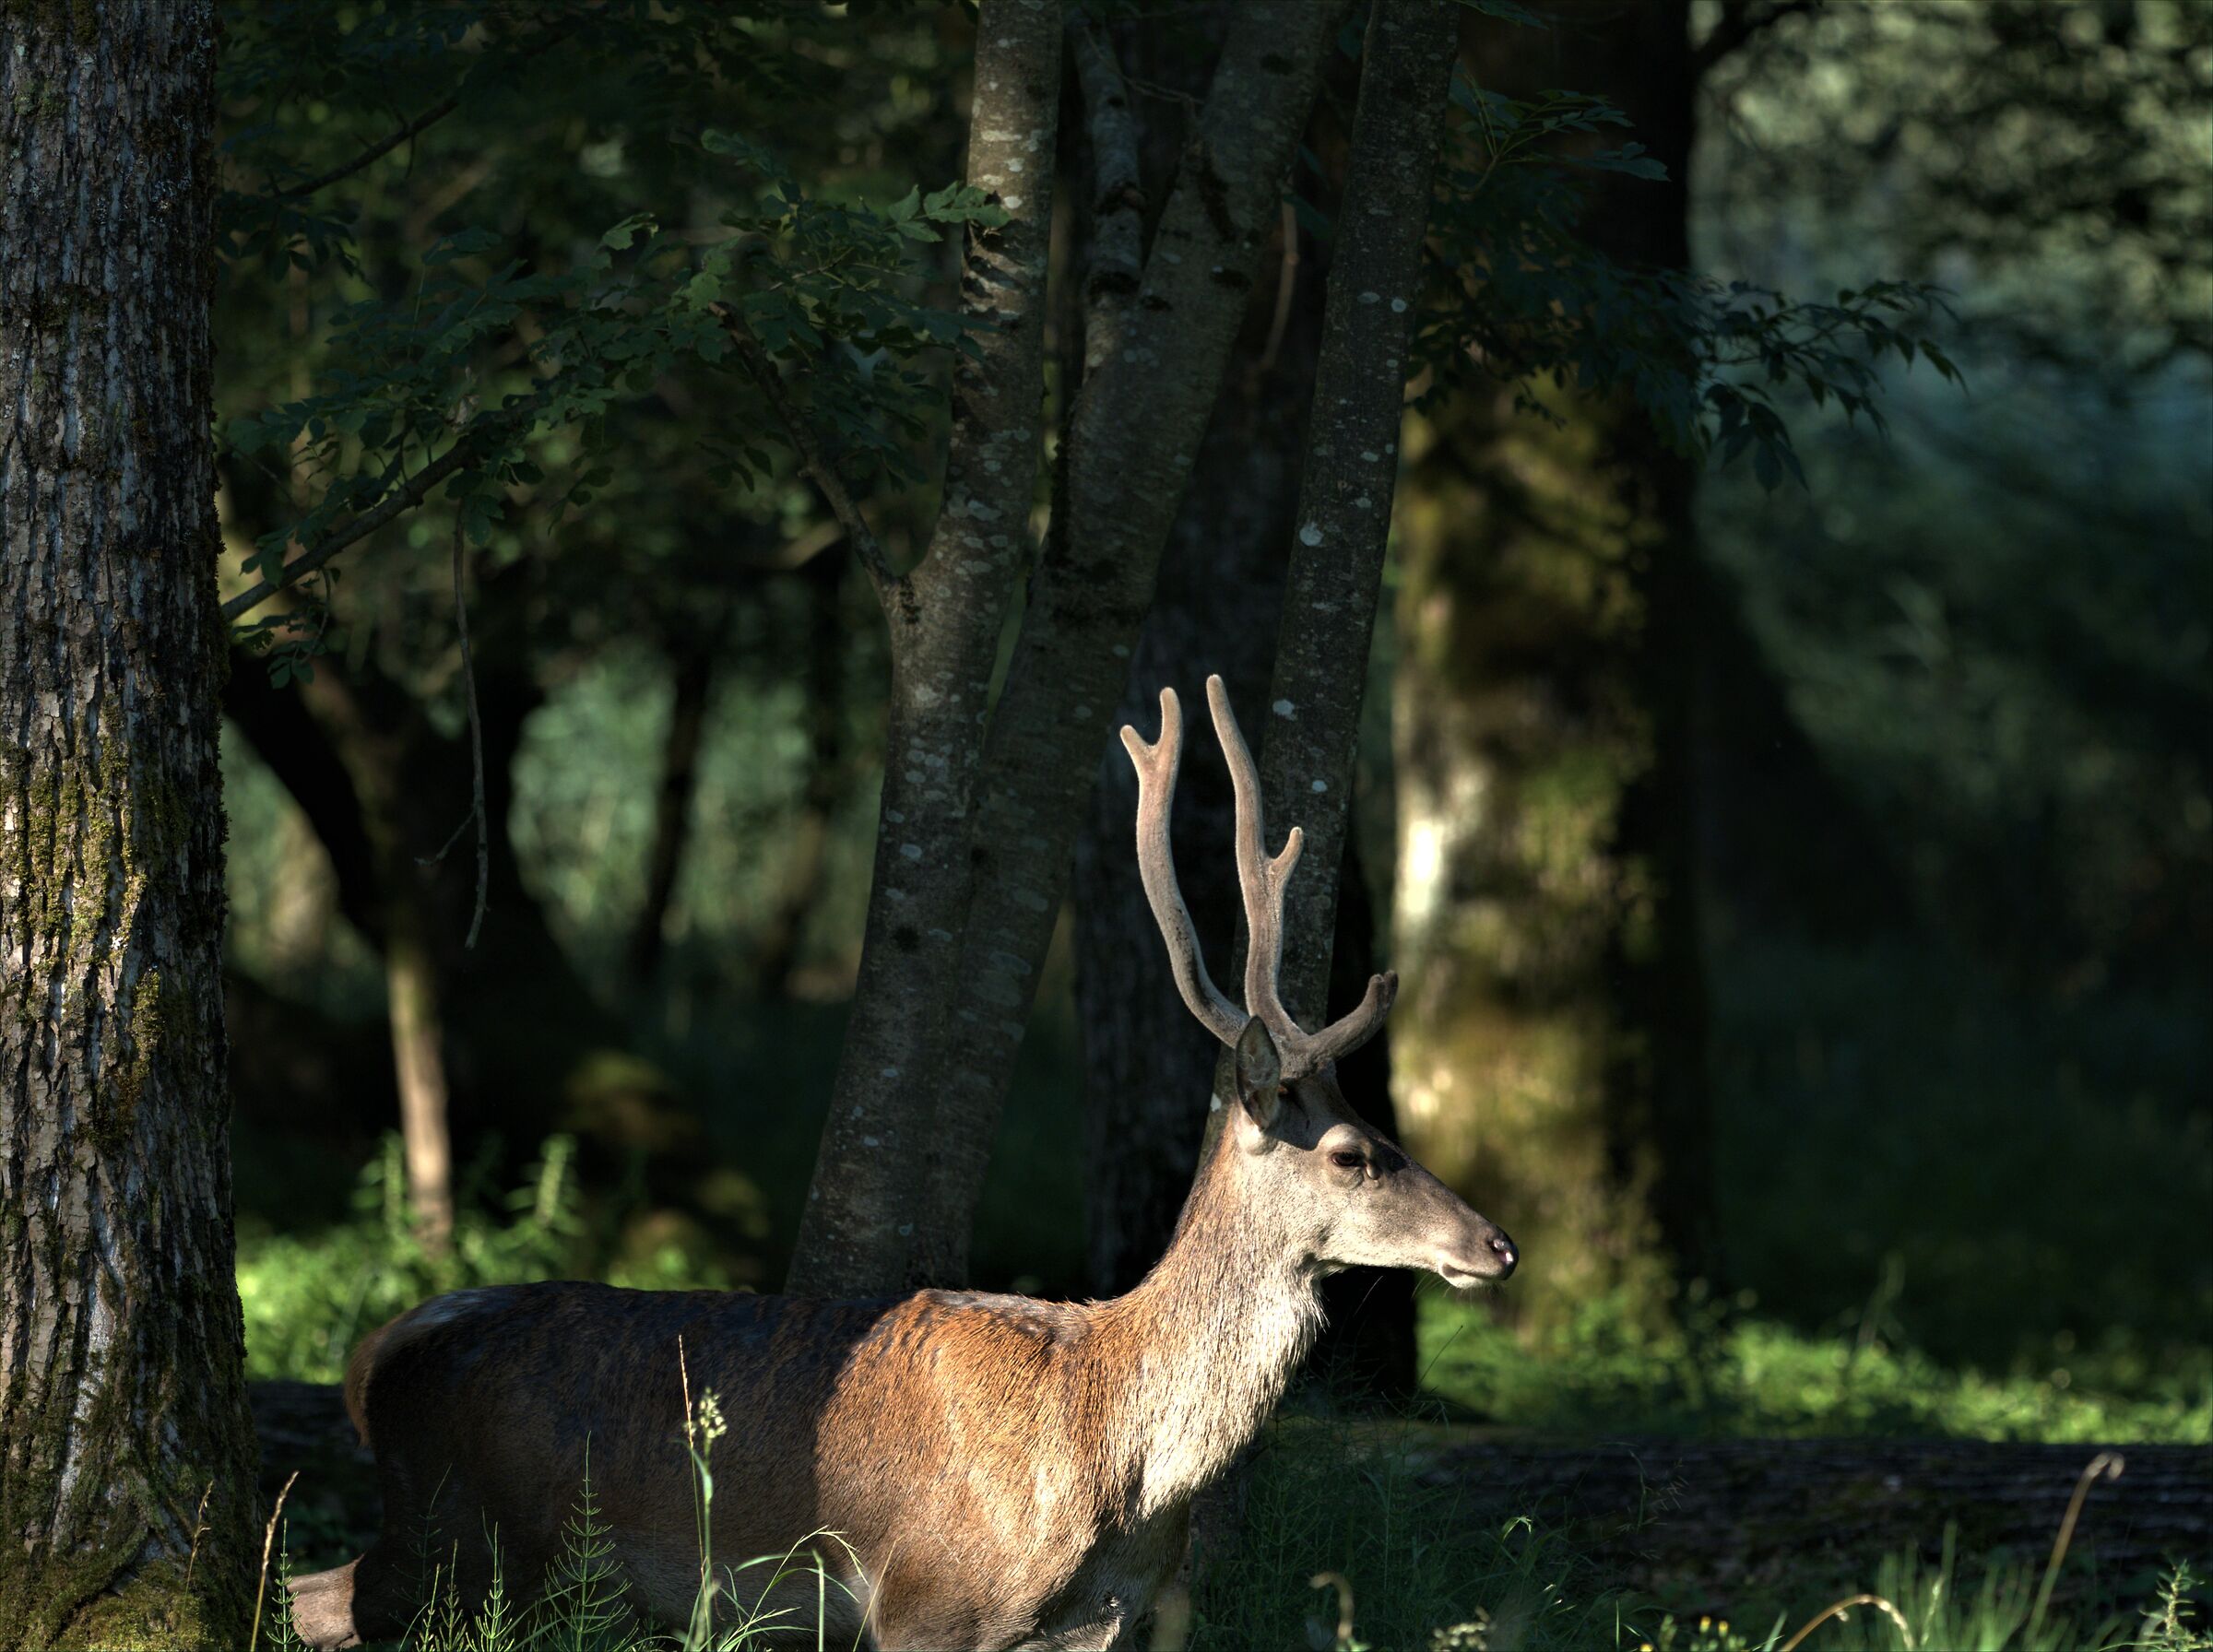 Young deer ...